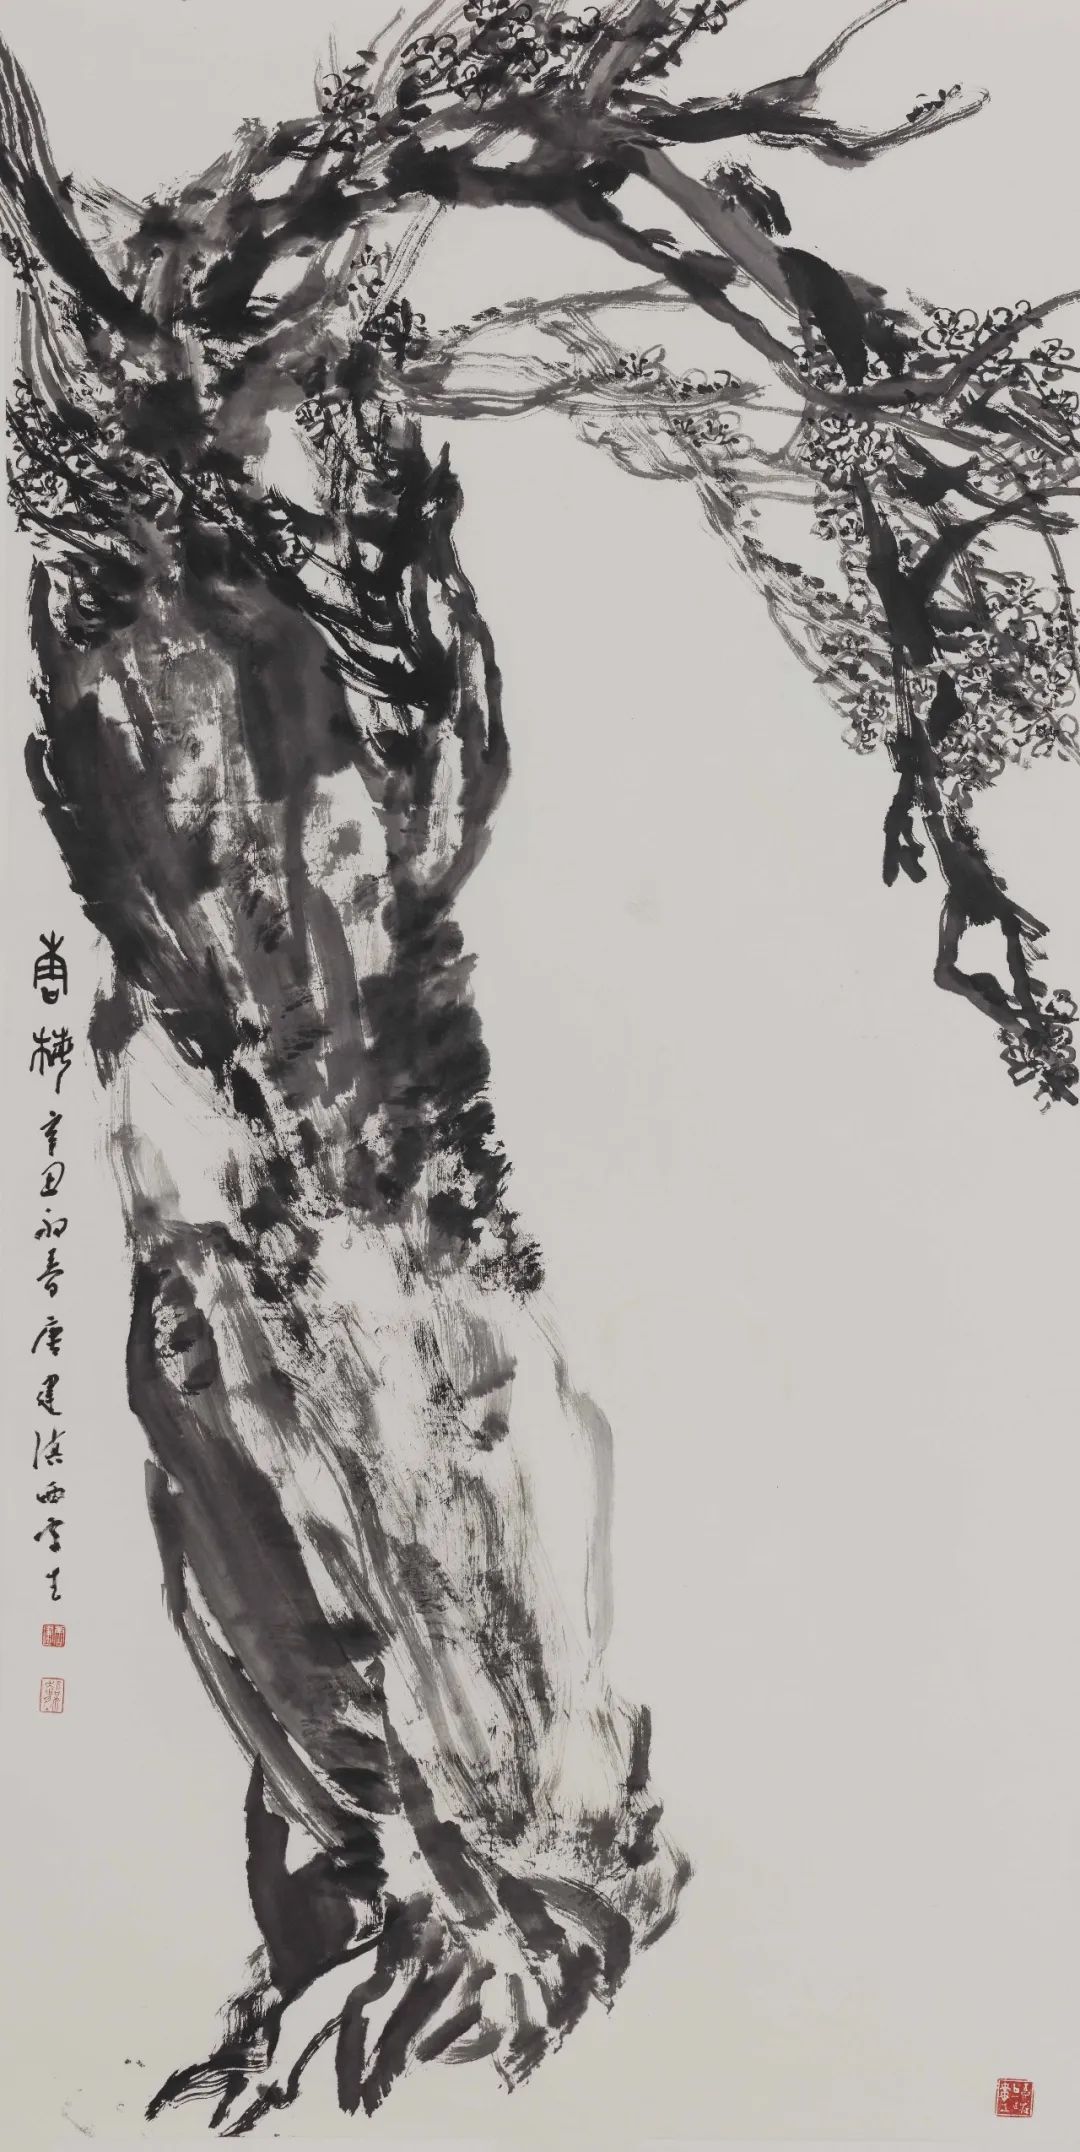 疏影横斜 暗香浮动——踏雪寻梅，探访著名画家唐建的艺术品格